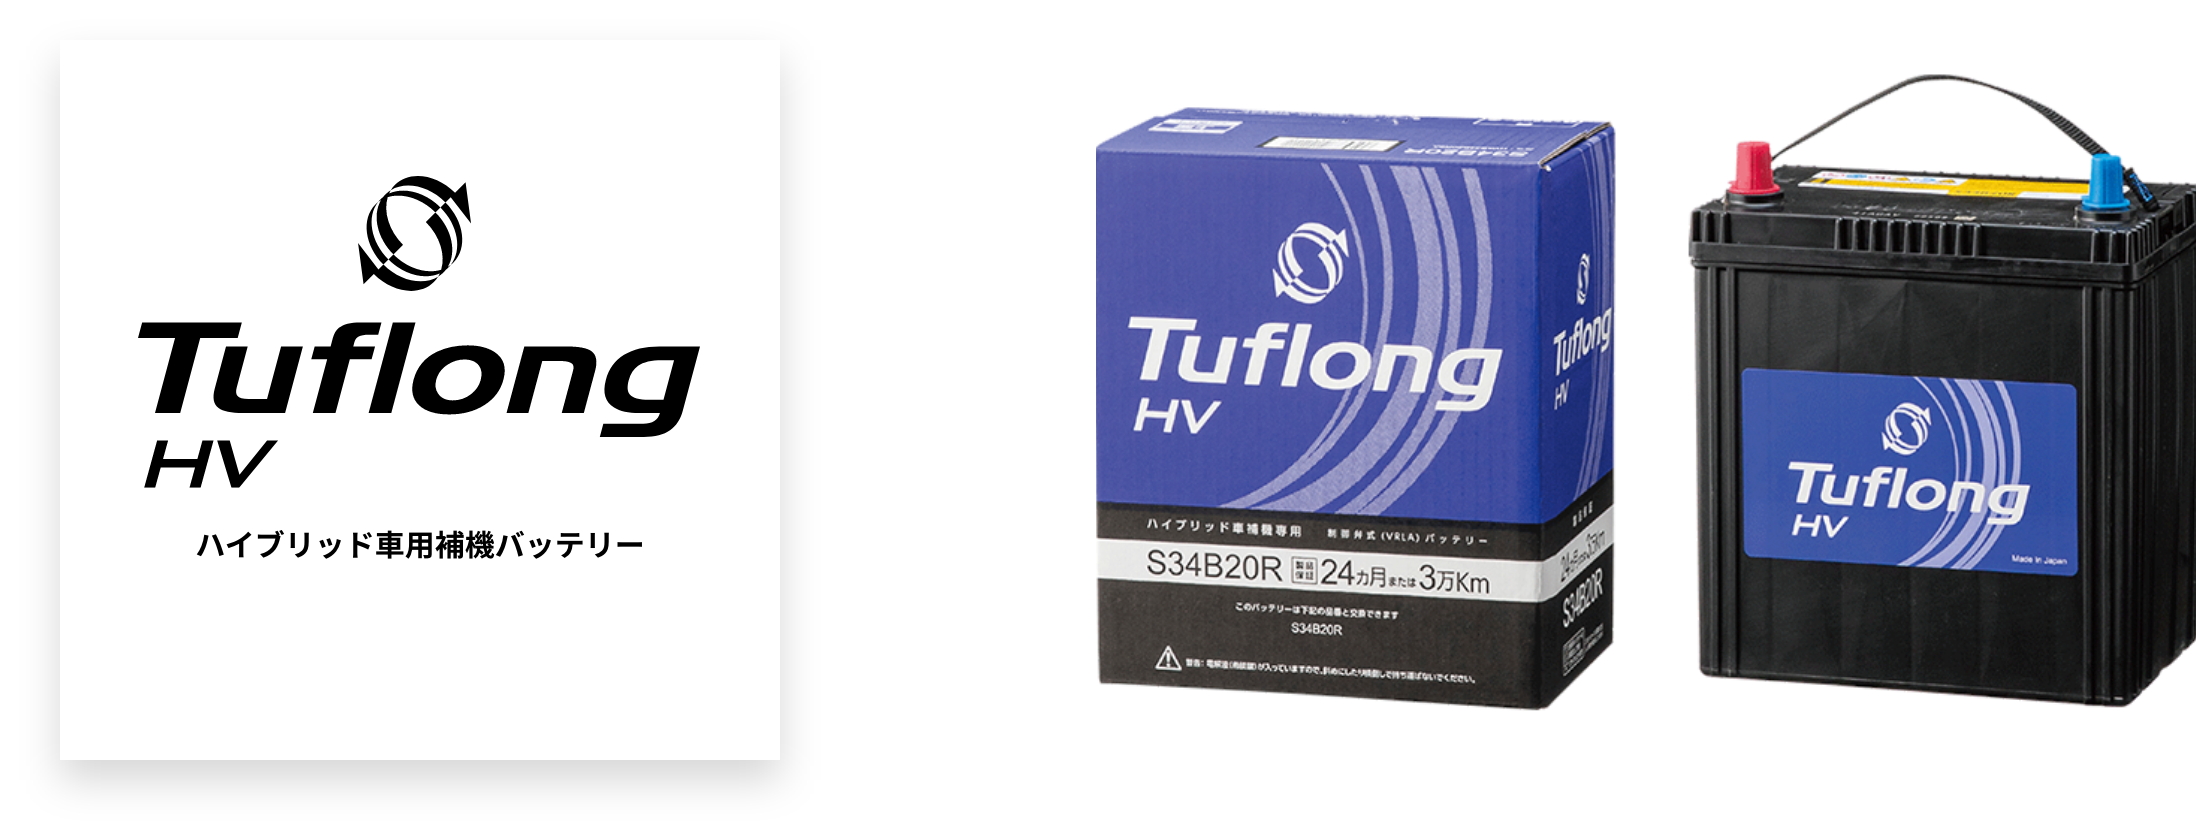 Tuflong HV - エナジーウィズ株式会社